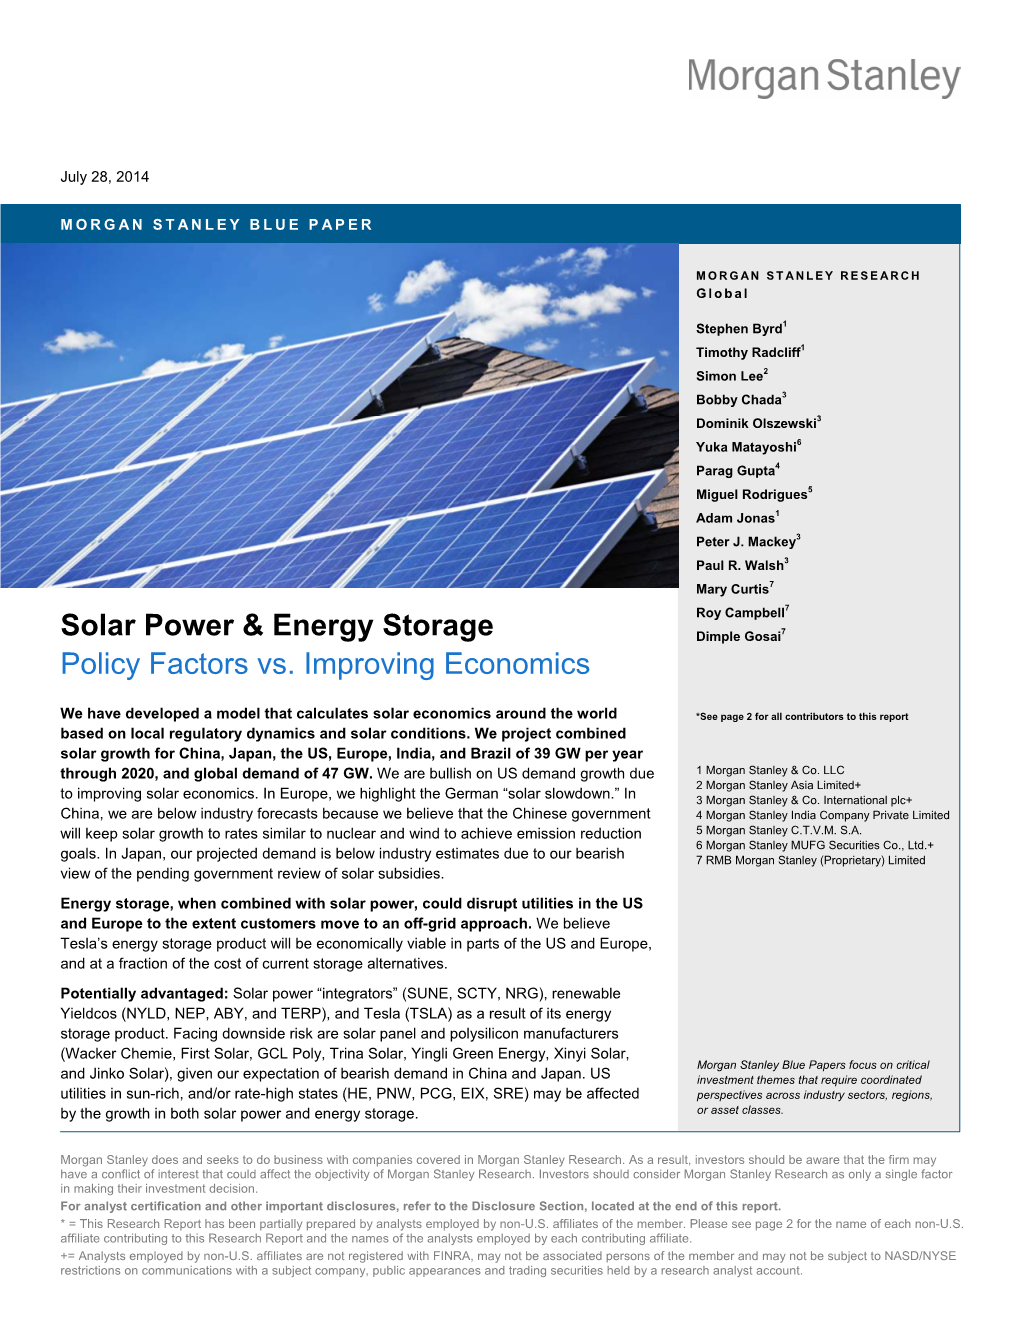 Solar Power & Energy Storage: Policy Factors Vs. Improving Economics